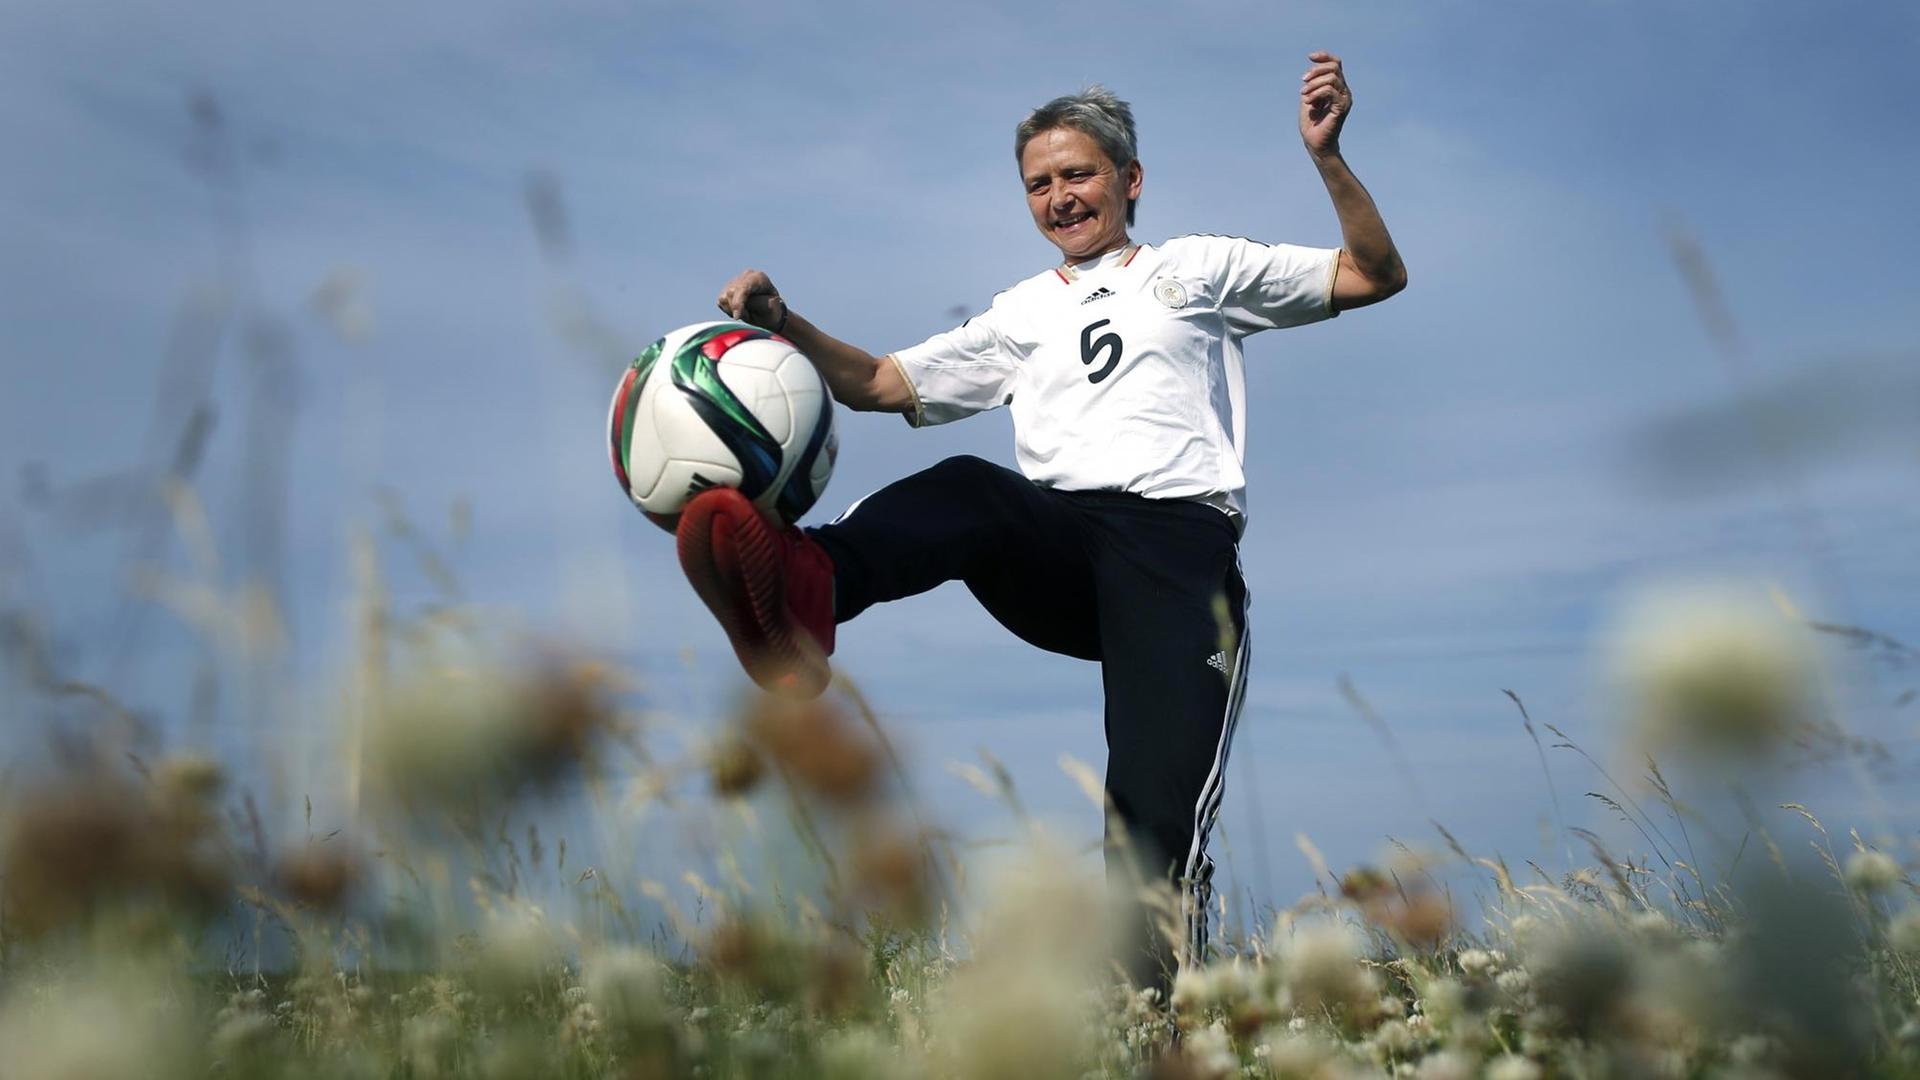 Die ehemalige Fußballnationalspielerin Petra Landers spielt mit einem Ball.